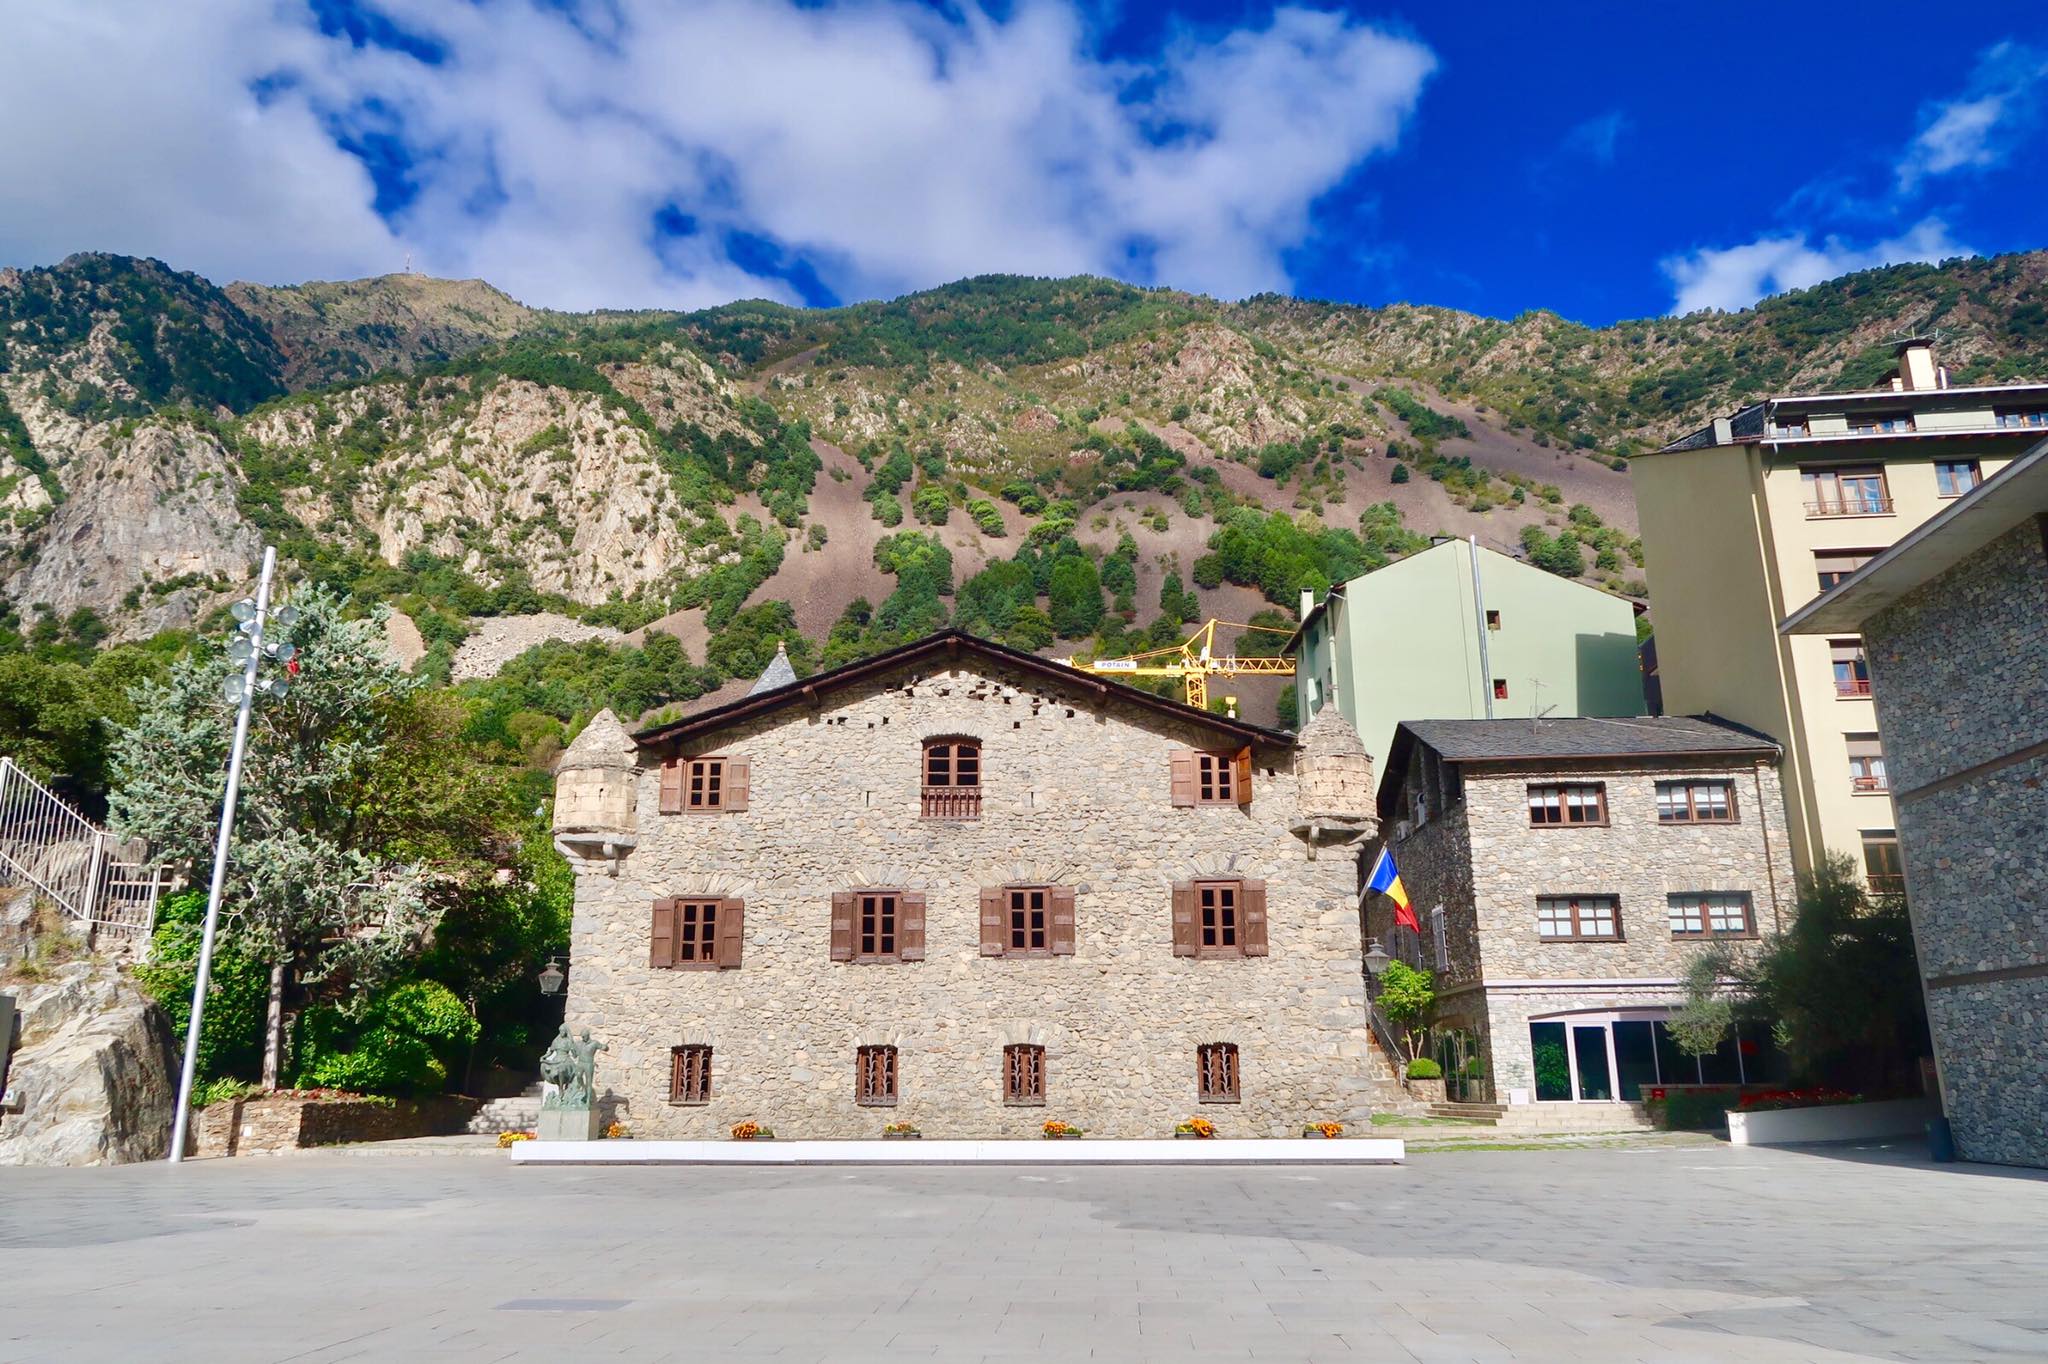 6 Reasons Why You Should Visit Andorra